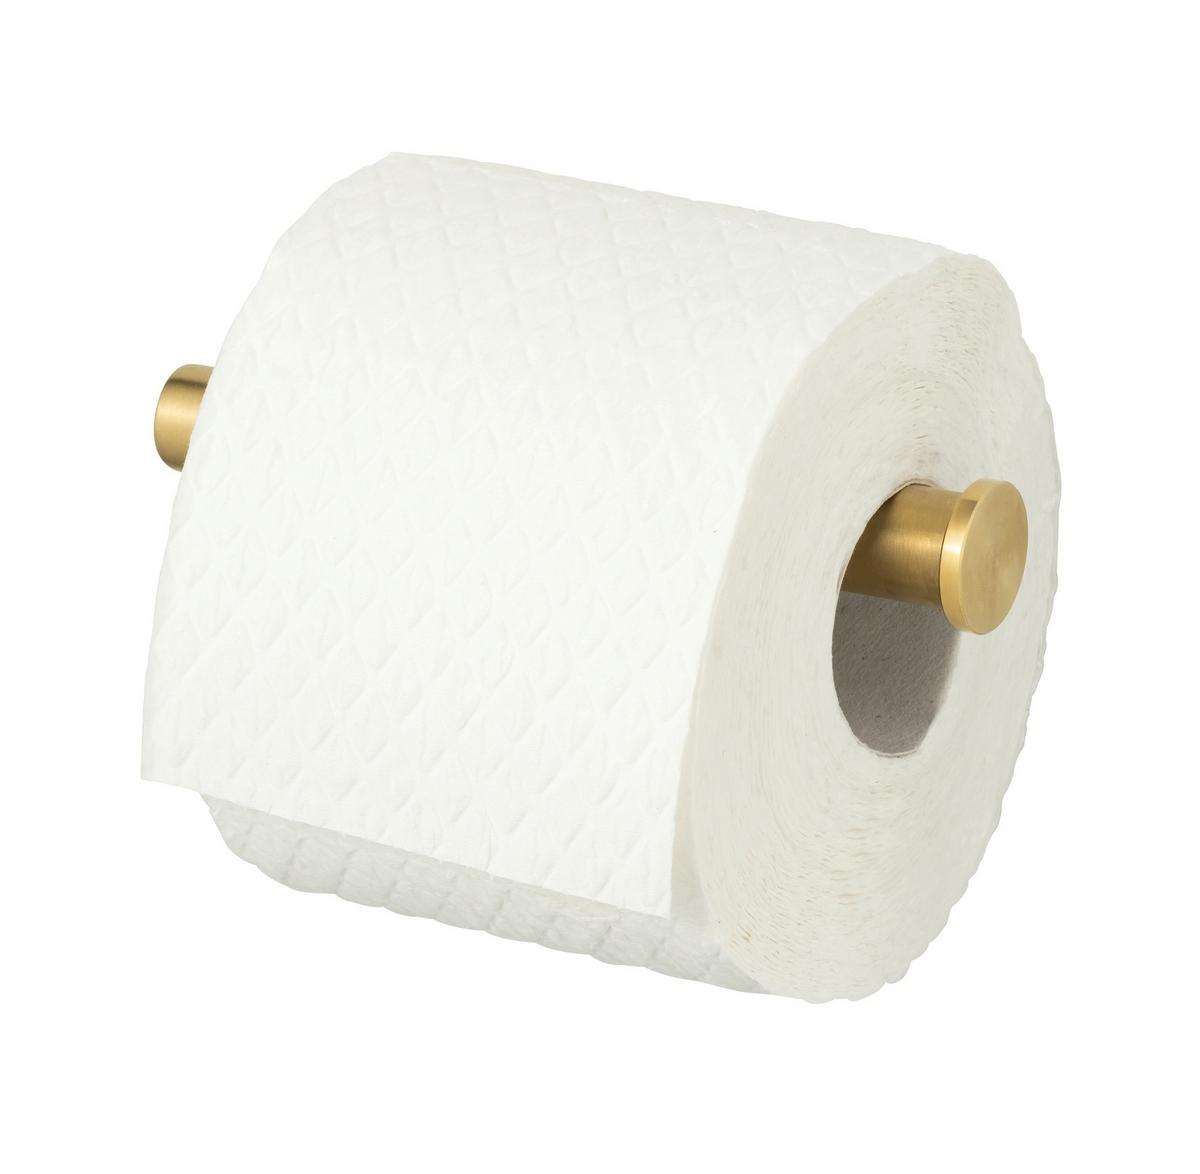 online ➤ Toilettenpapierhalter Goldfarben in mömax kaufen